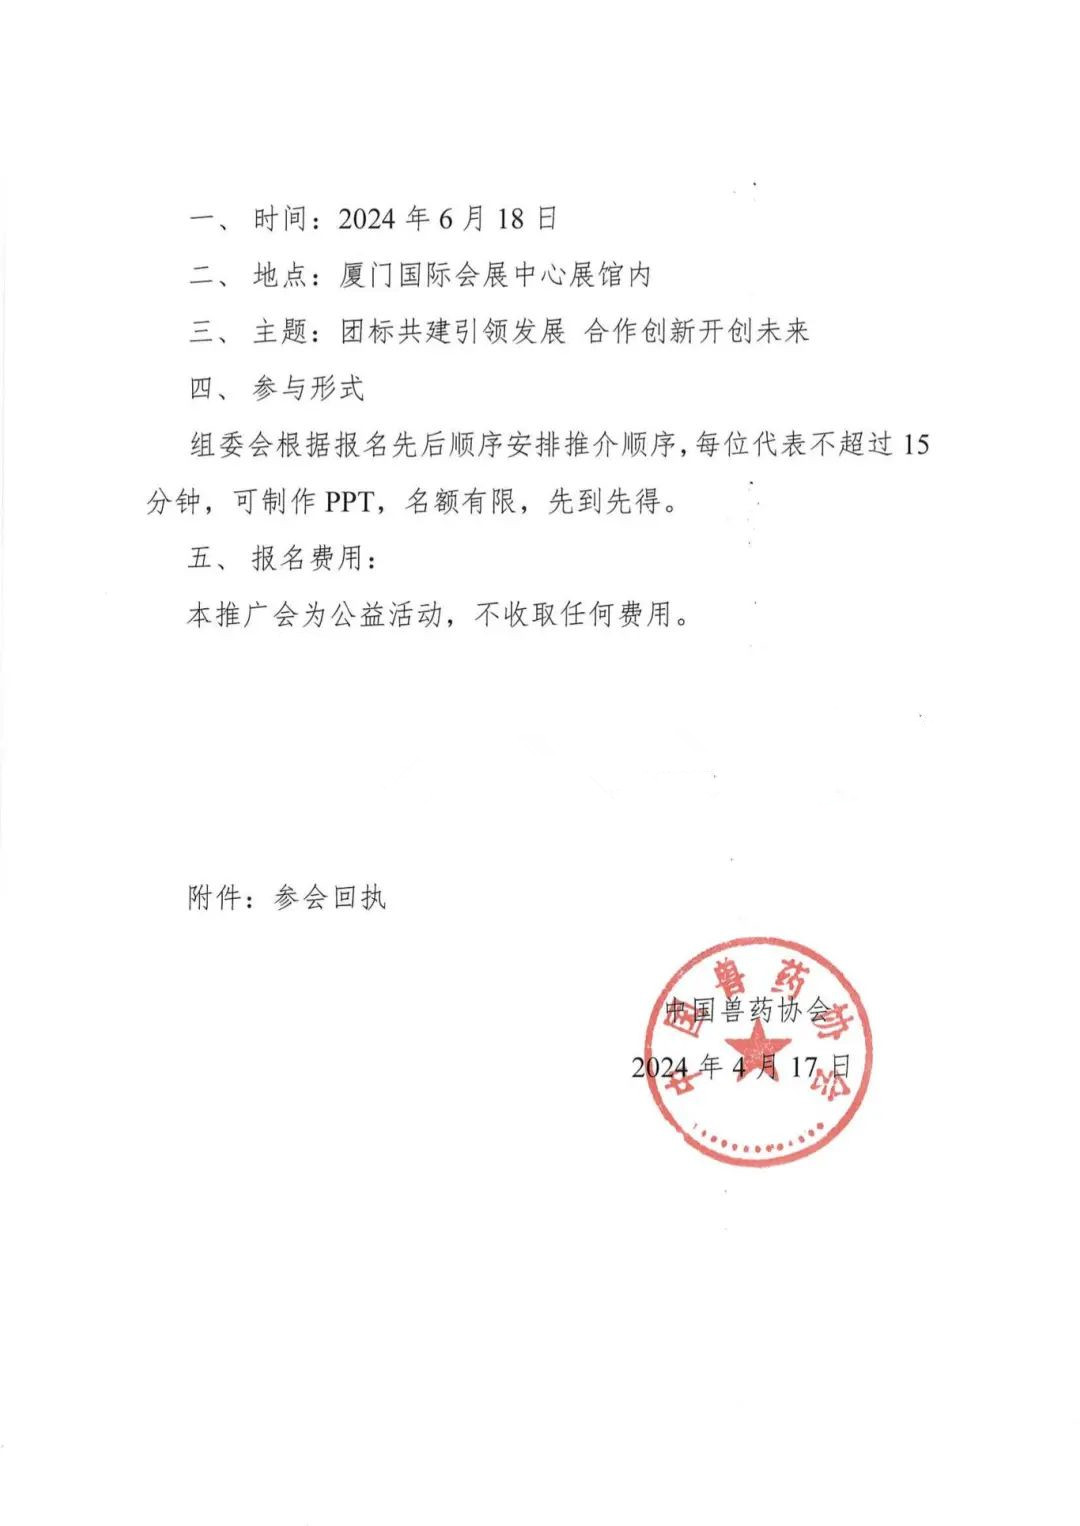 中国兽药协会团体标准发布及推广会邀请函